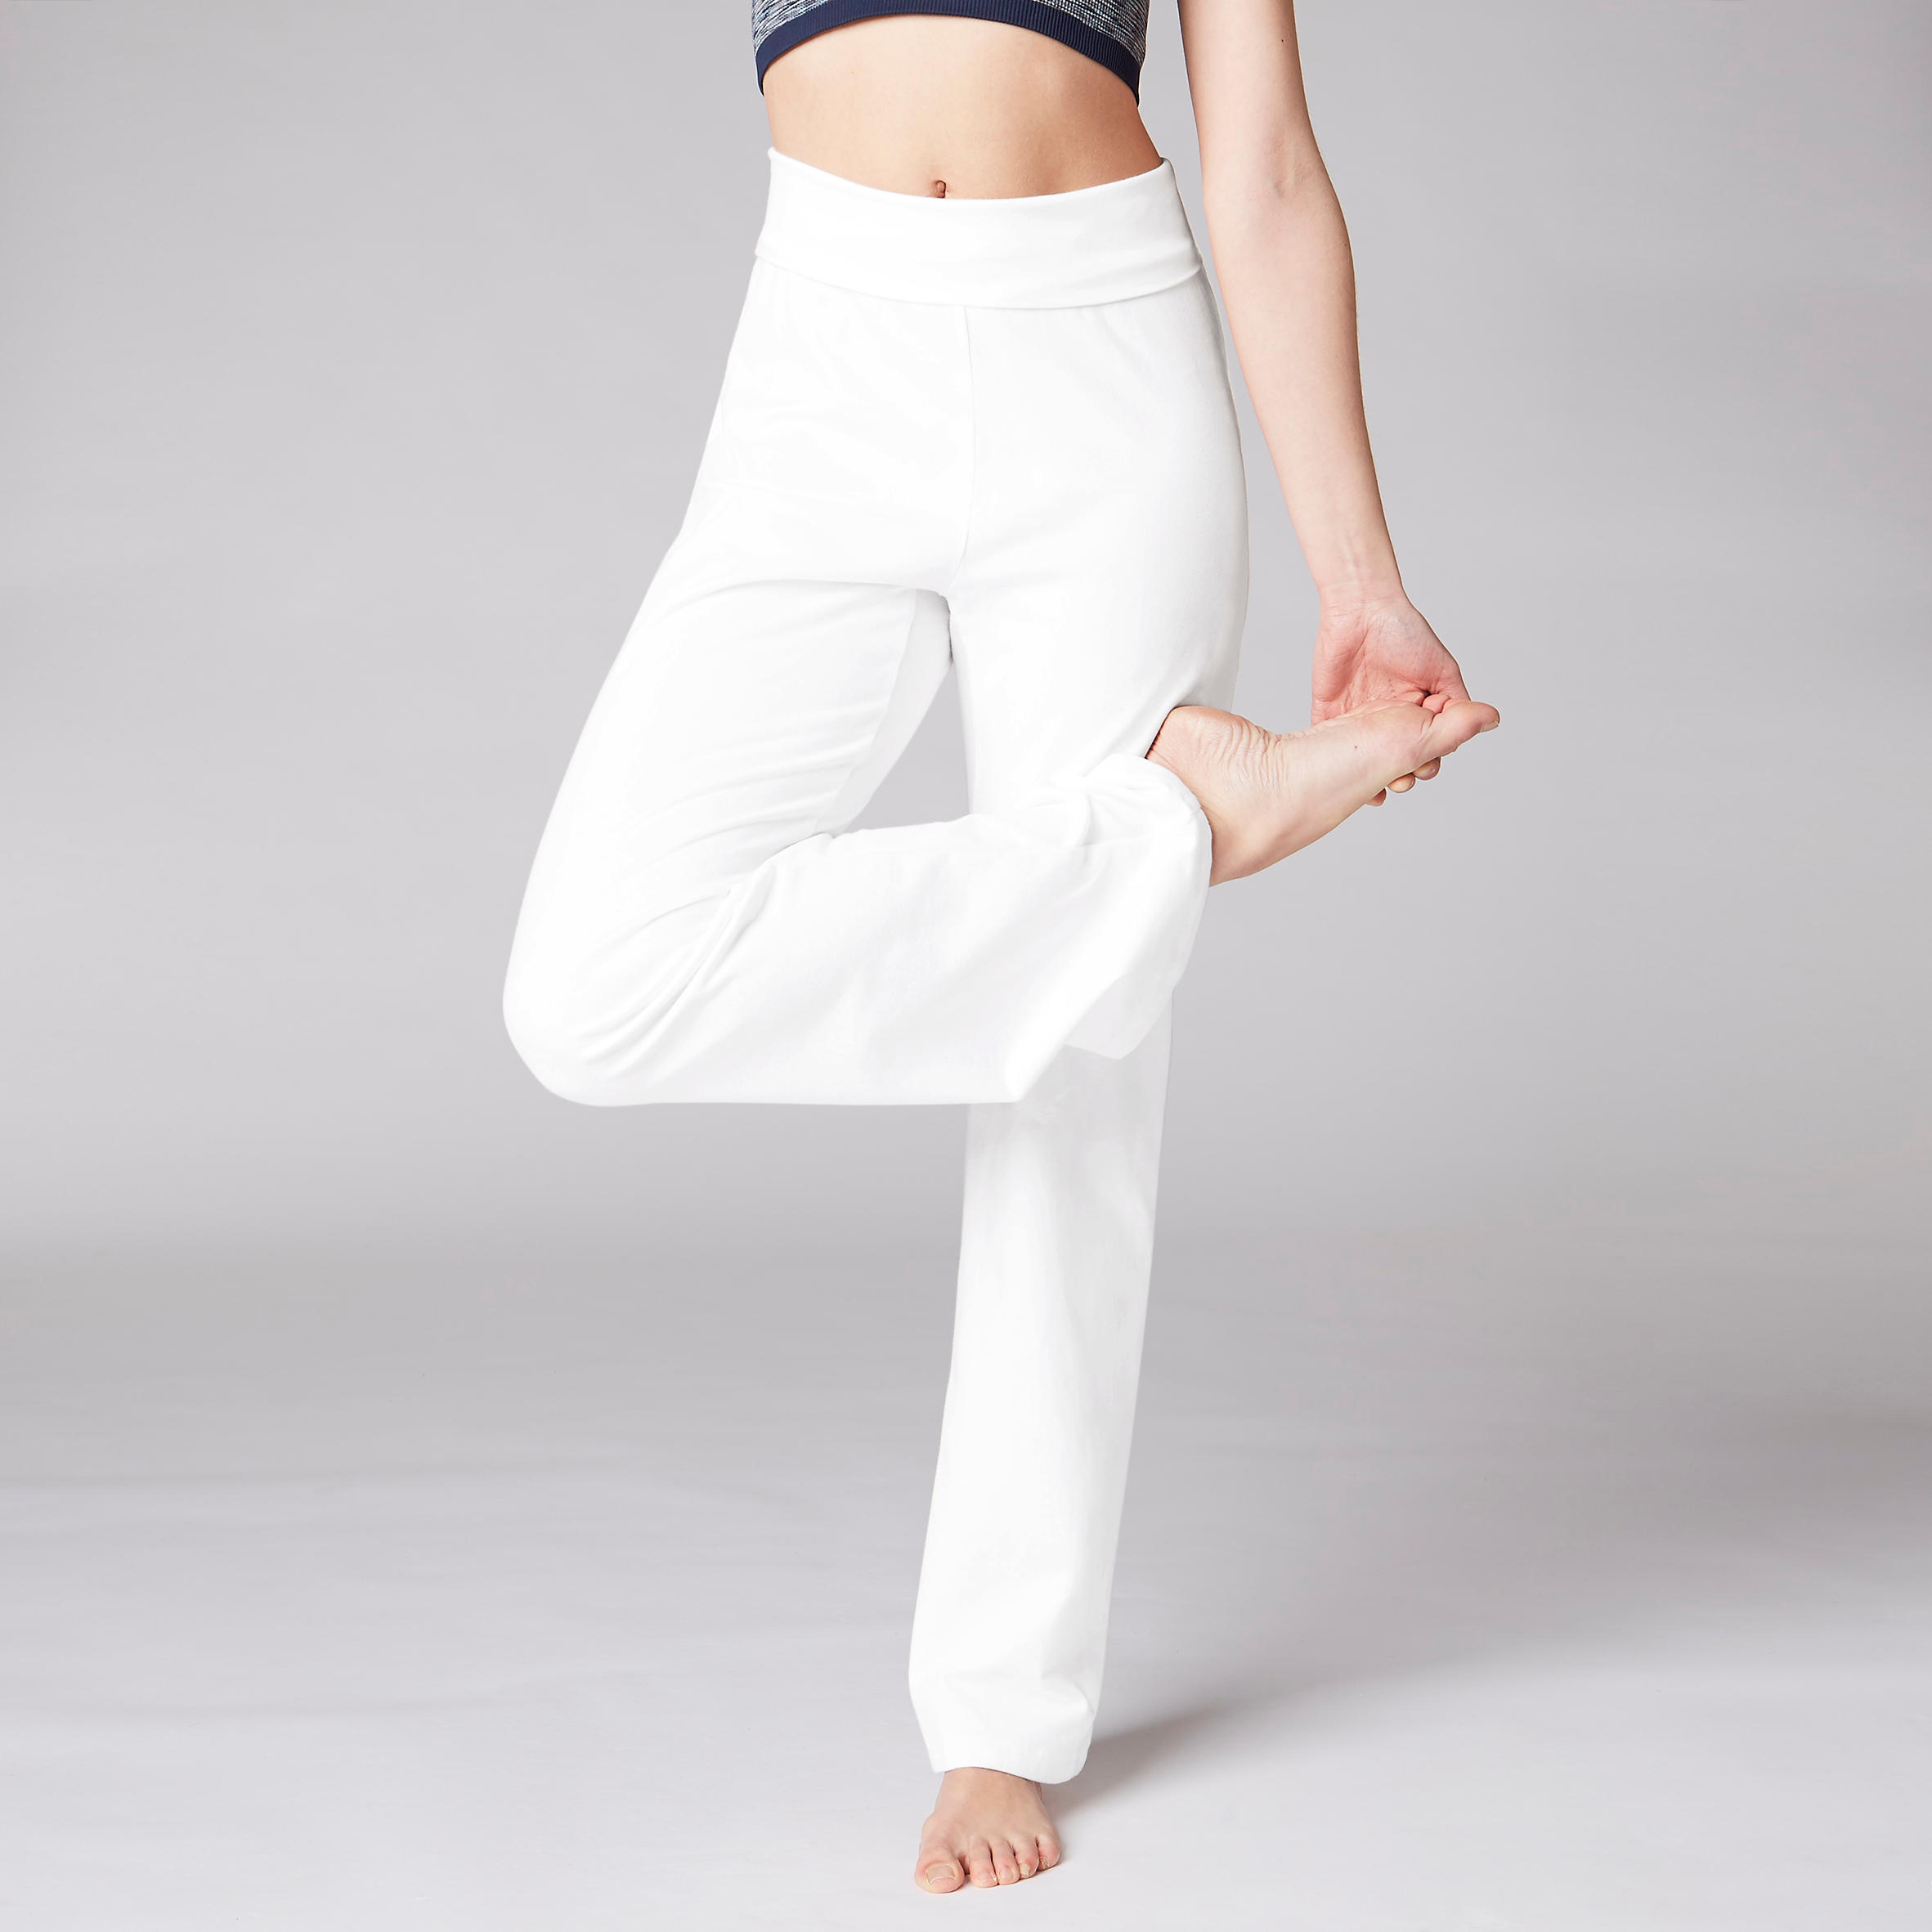 Women's Cotton Yoga Leggings - Beige - Eggshell - Kimjaly - Decathlon